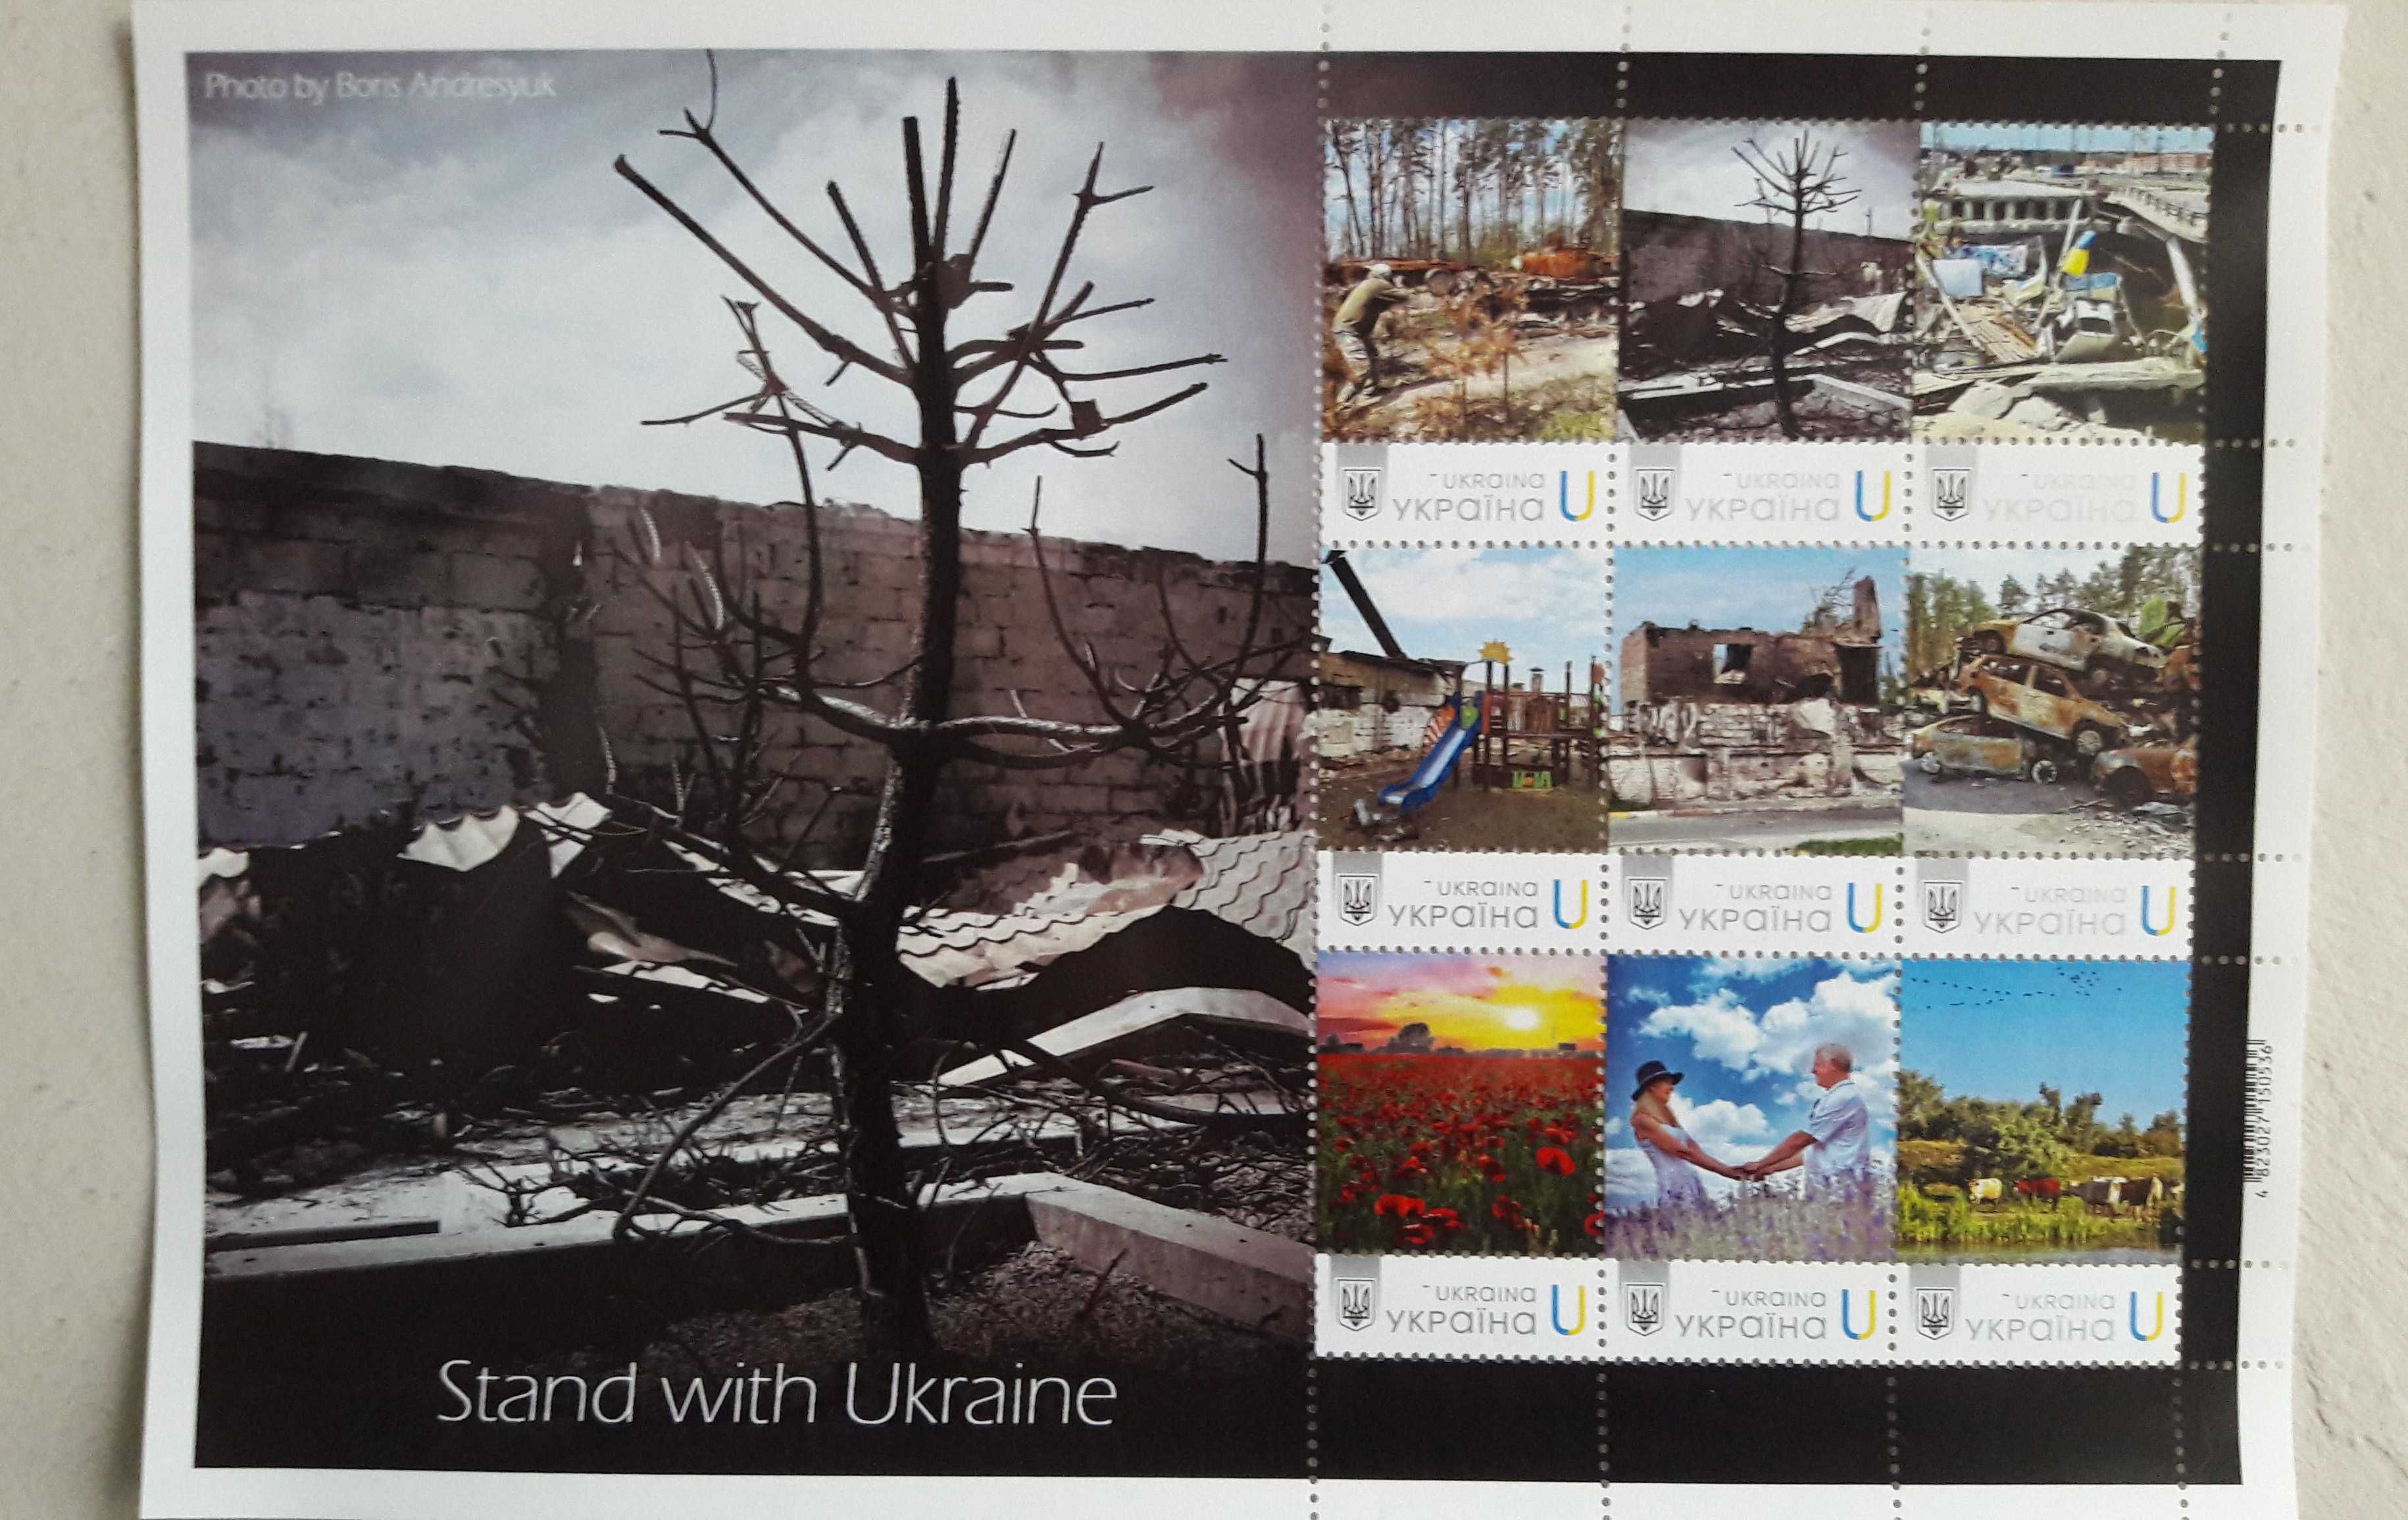 Лимитированный блок авторских почтовых марок Укрпочта